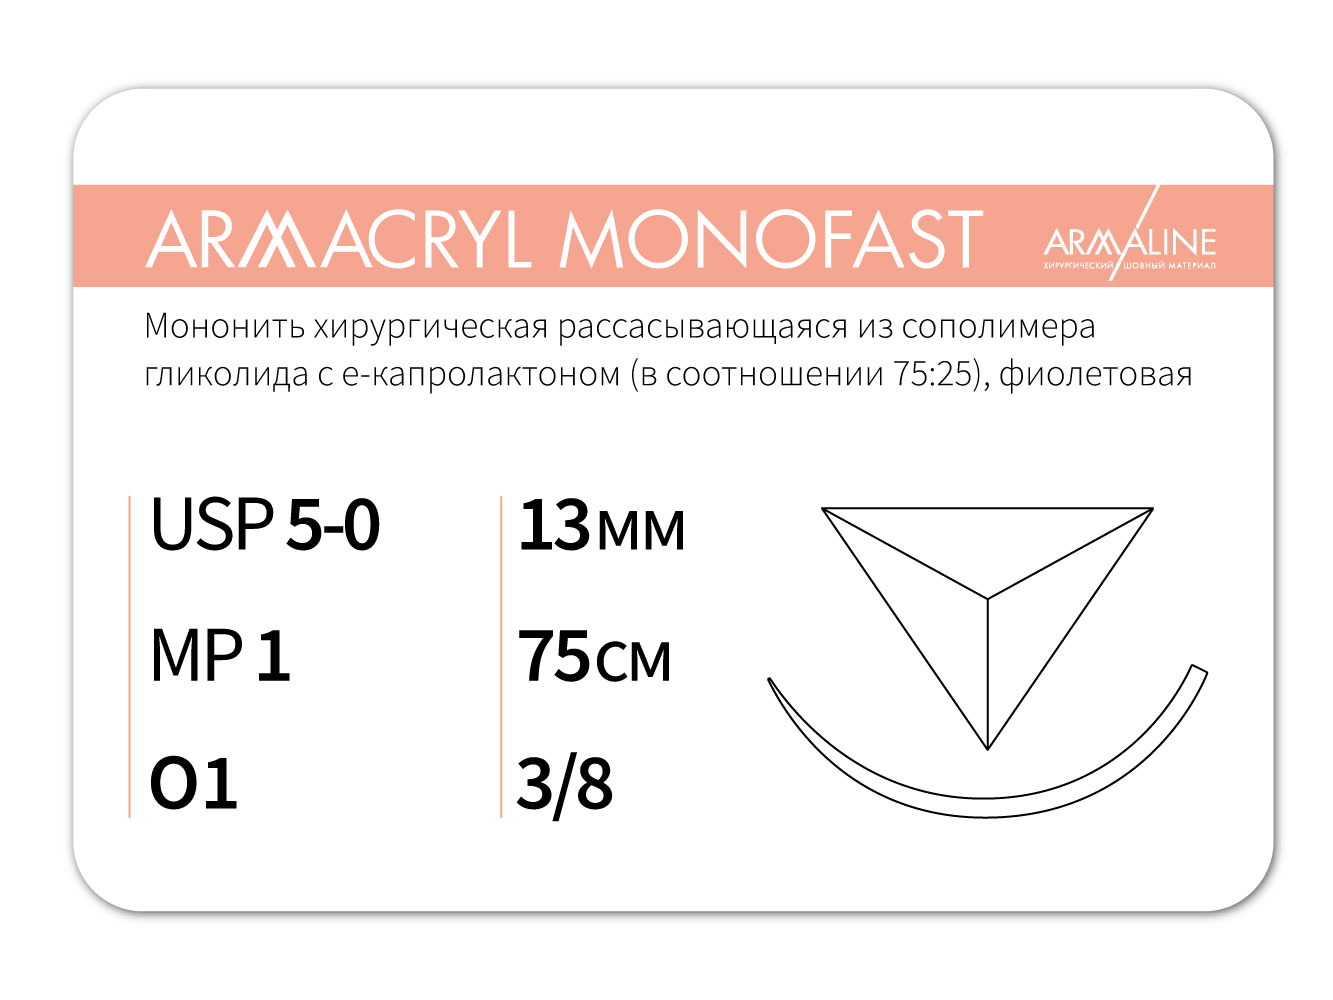 ARMACRYL MONOFAST/Армакрил монофаст (5-0) 75 см - материал хирургический шовный стерильный с атравматической обратно-режущей иглой